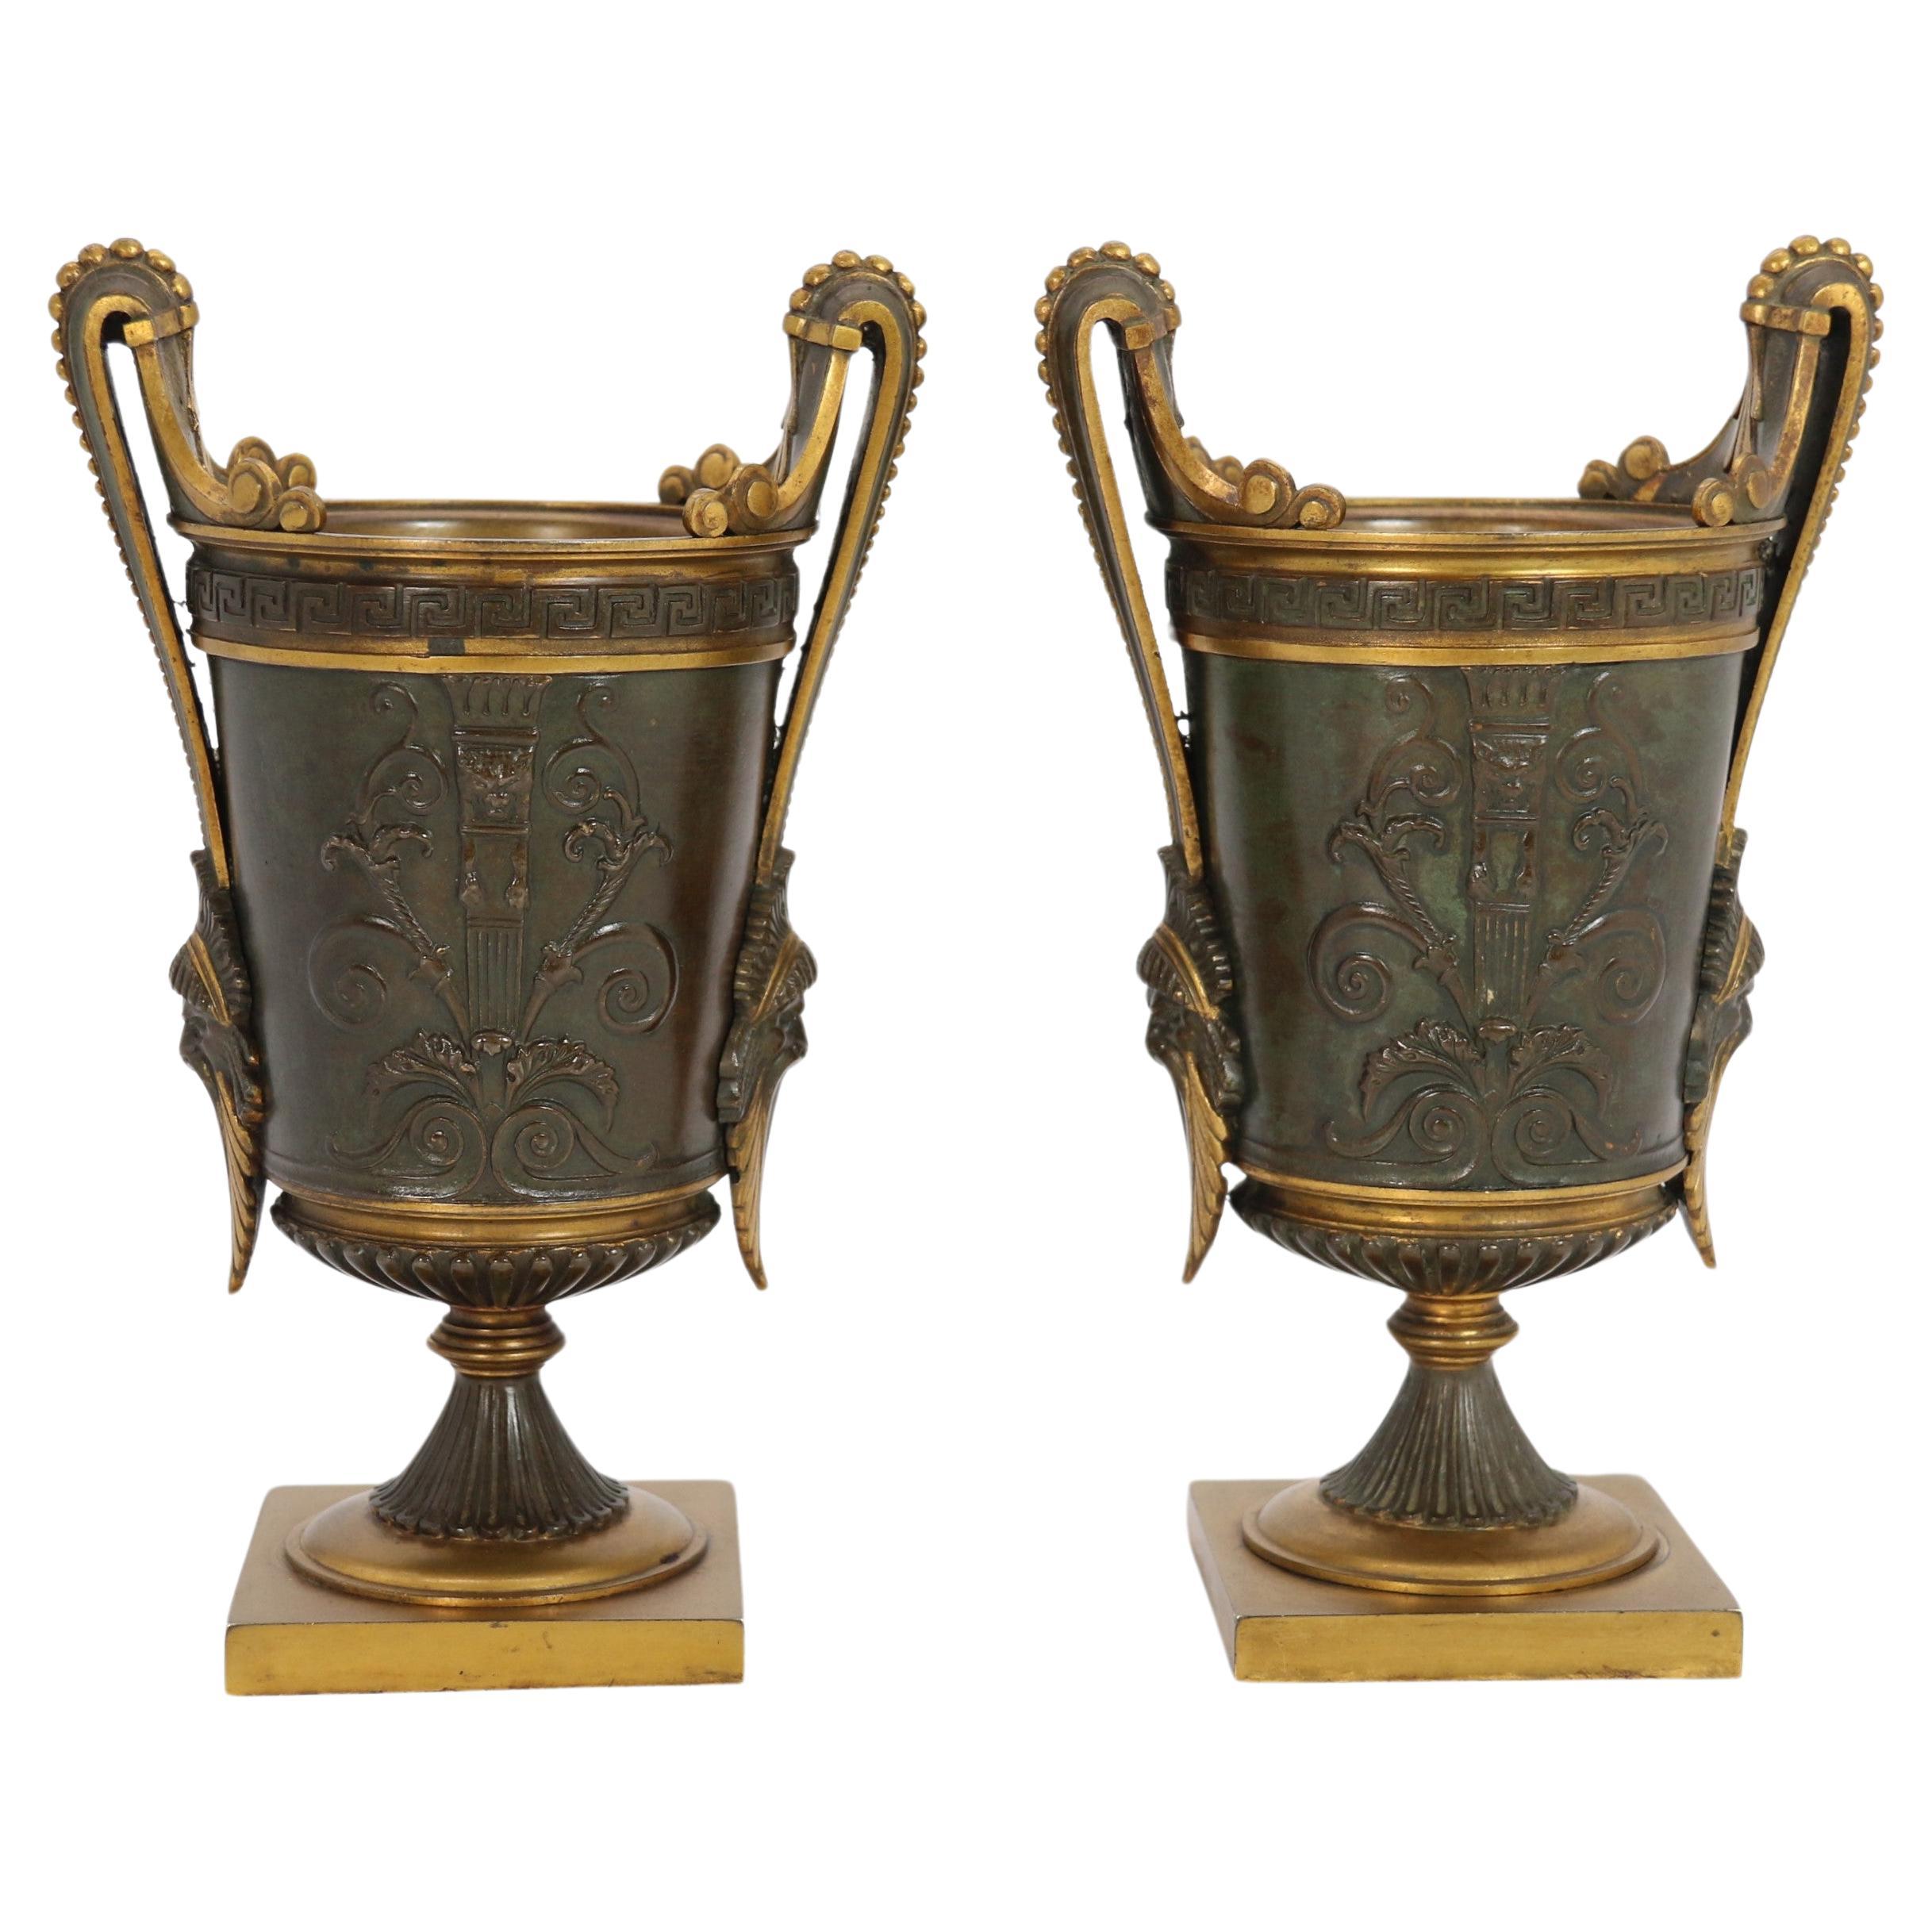 Paire d'urnes classiques en bronze et bronze doré d'époque Empire, vers 1830